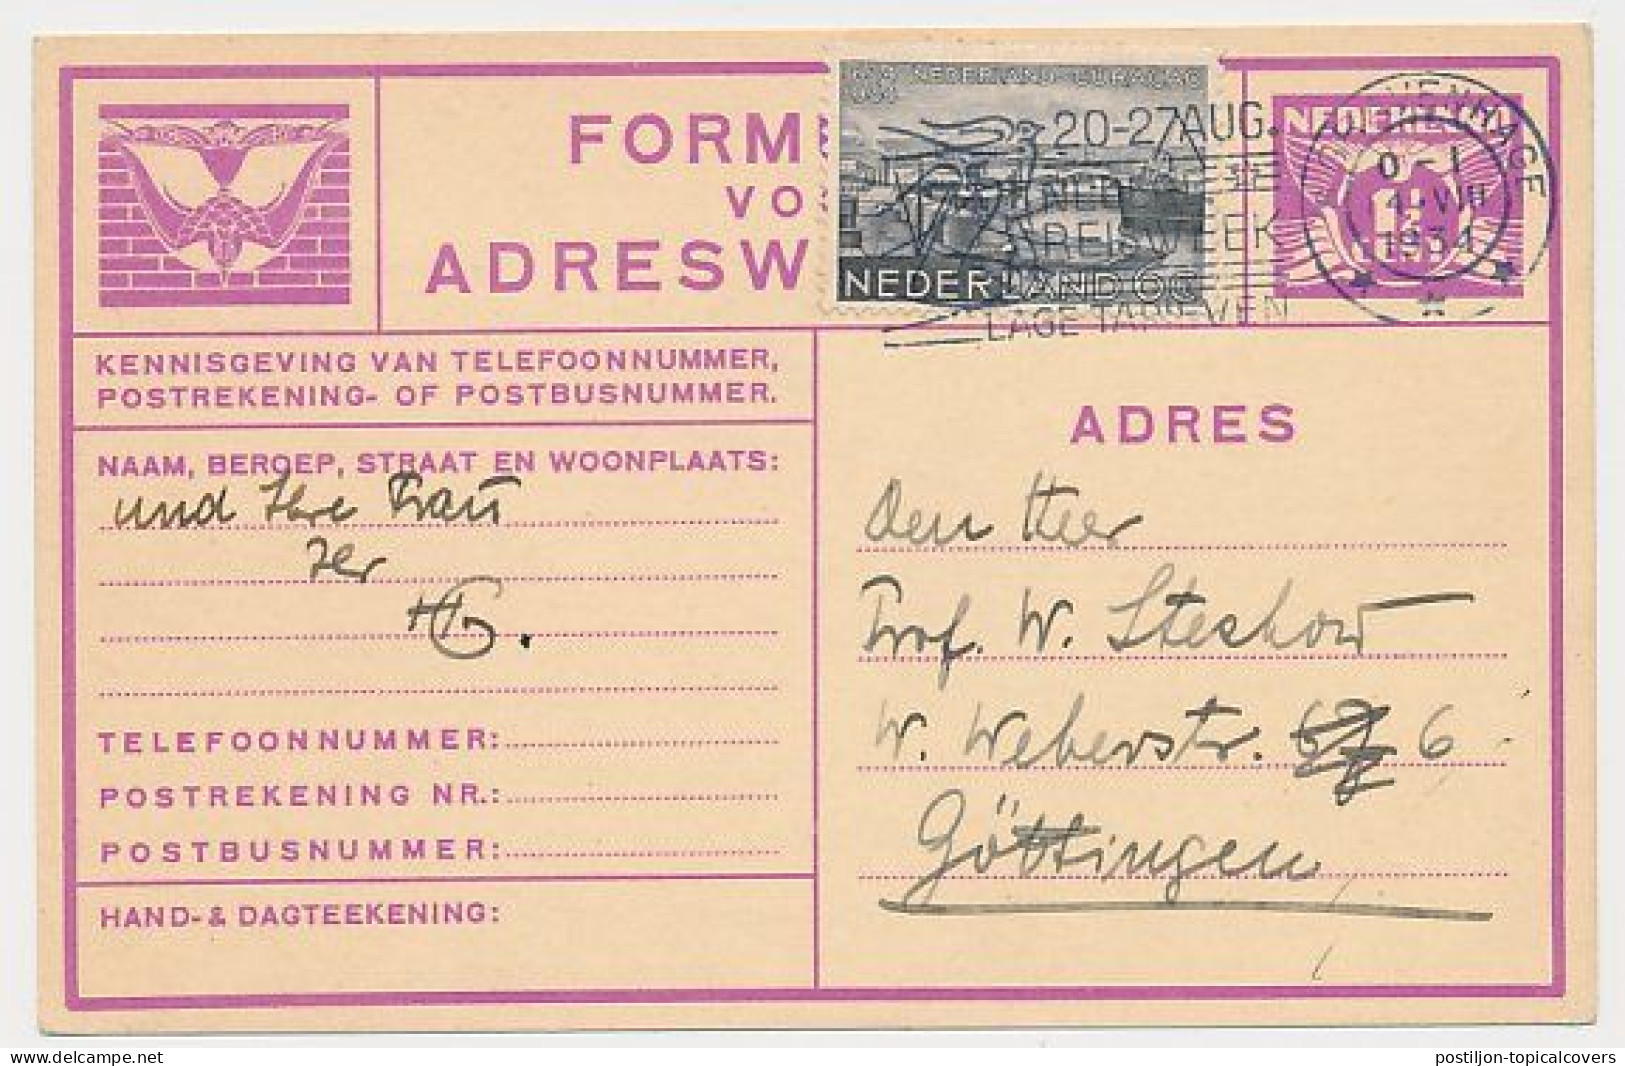 Verhuiskaart G.11 Bijfrankering S Gravenhage - Duitsland 1934 - Briefe U. Dokumente